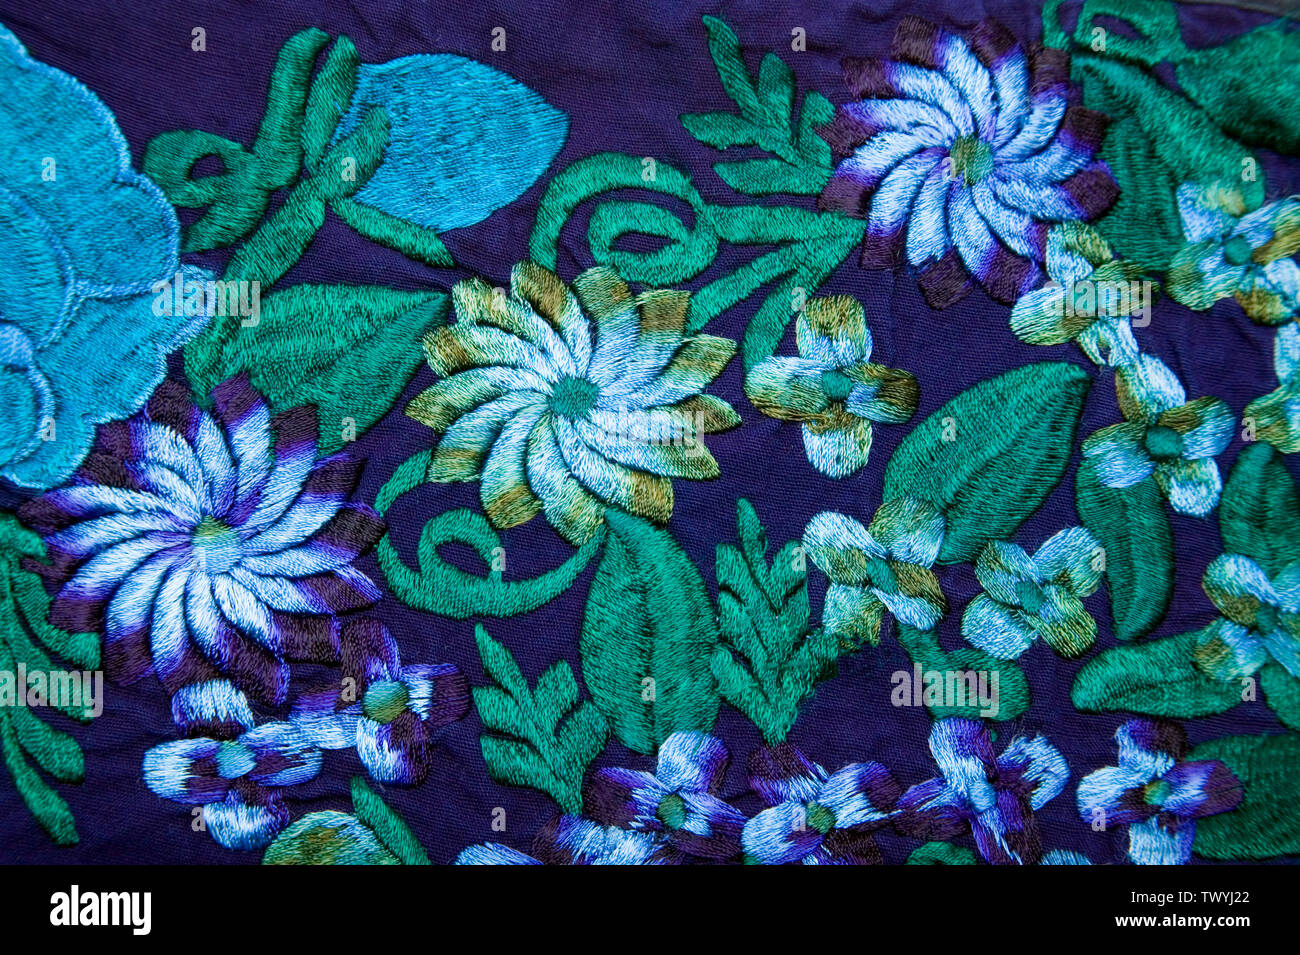 Motif de broderie florale sur tissu Banque D'Images